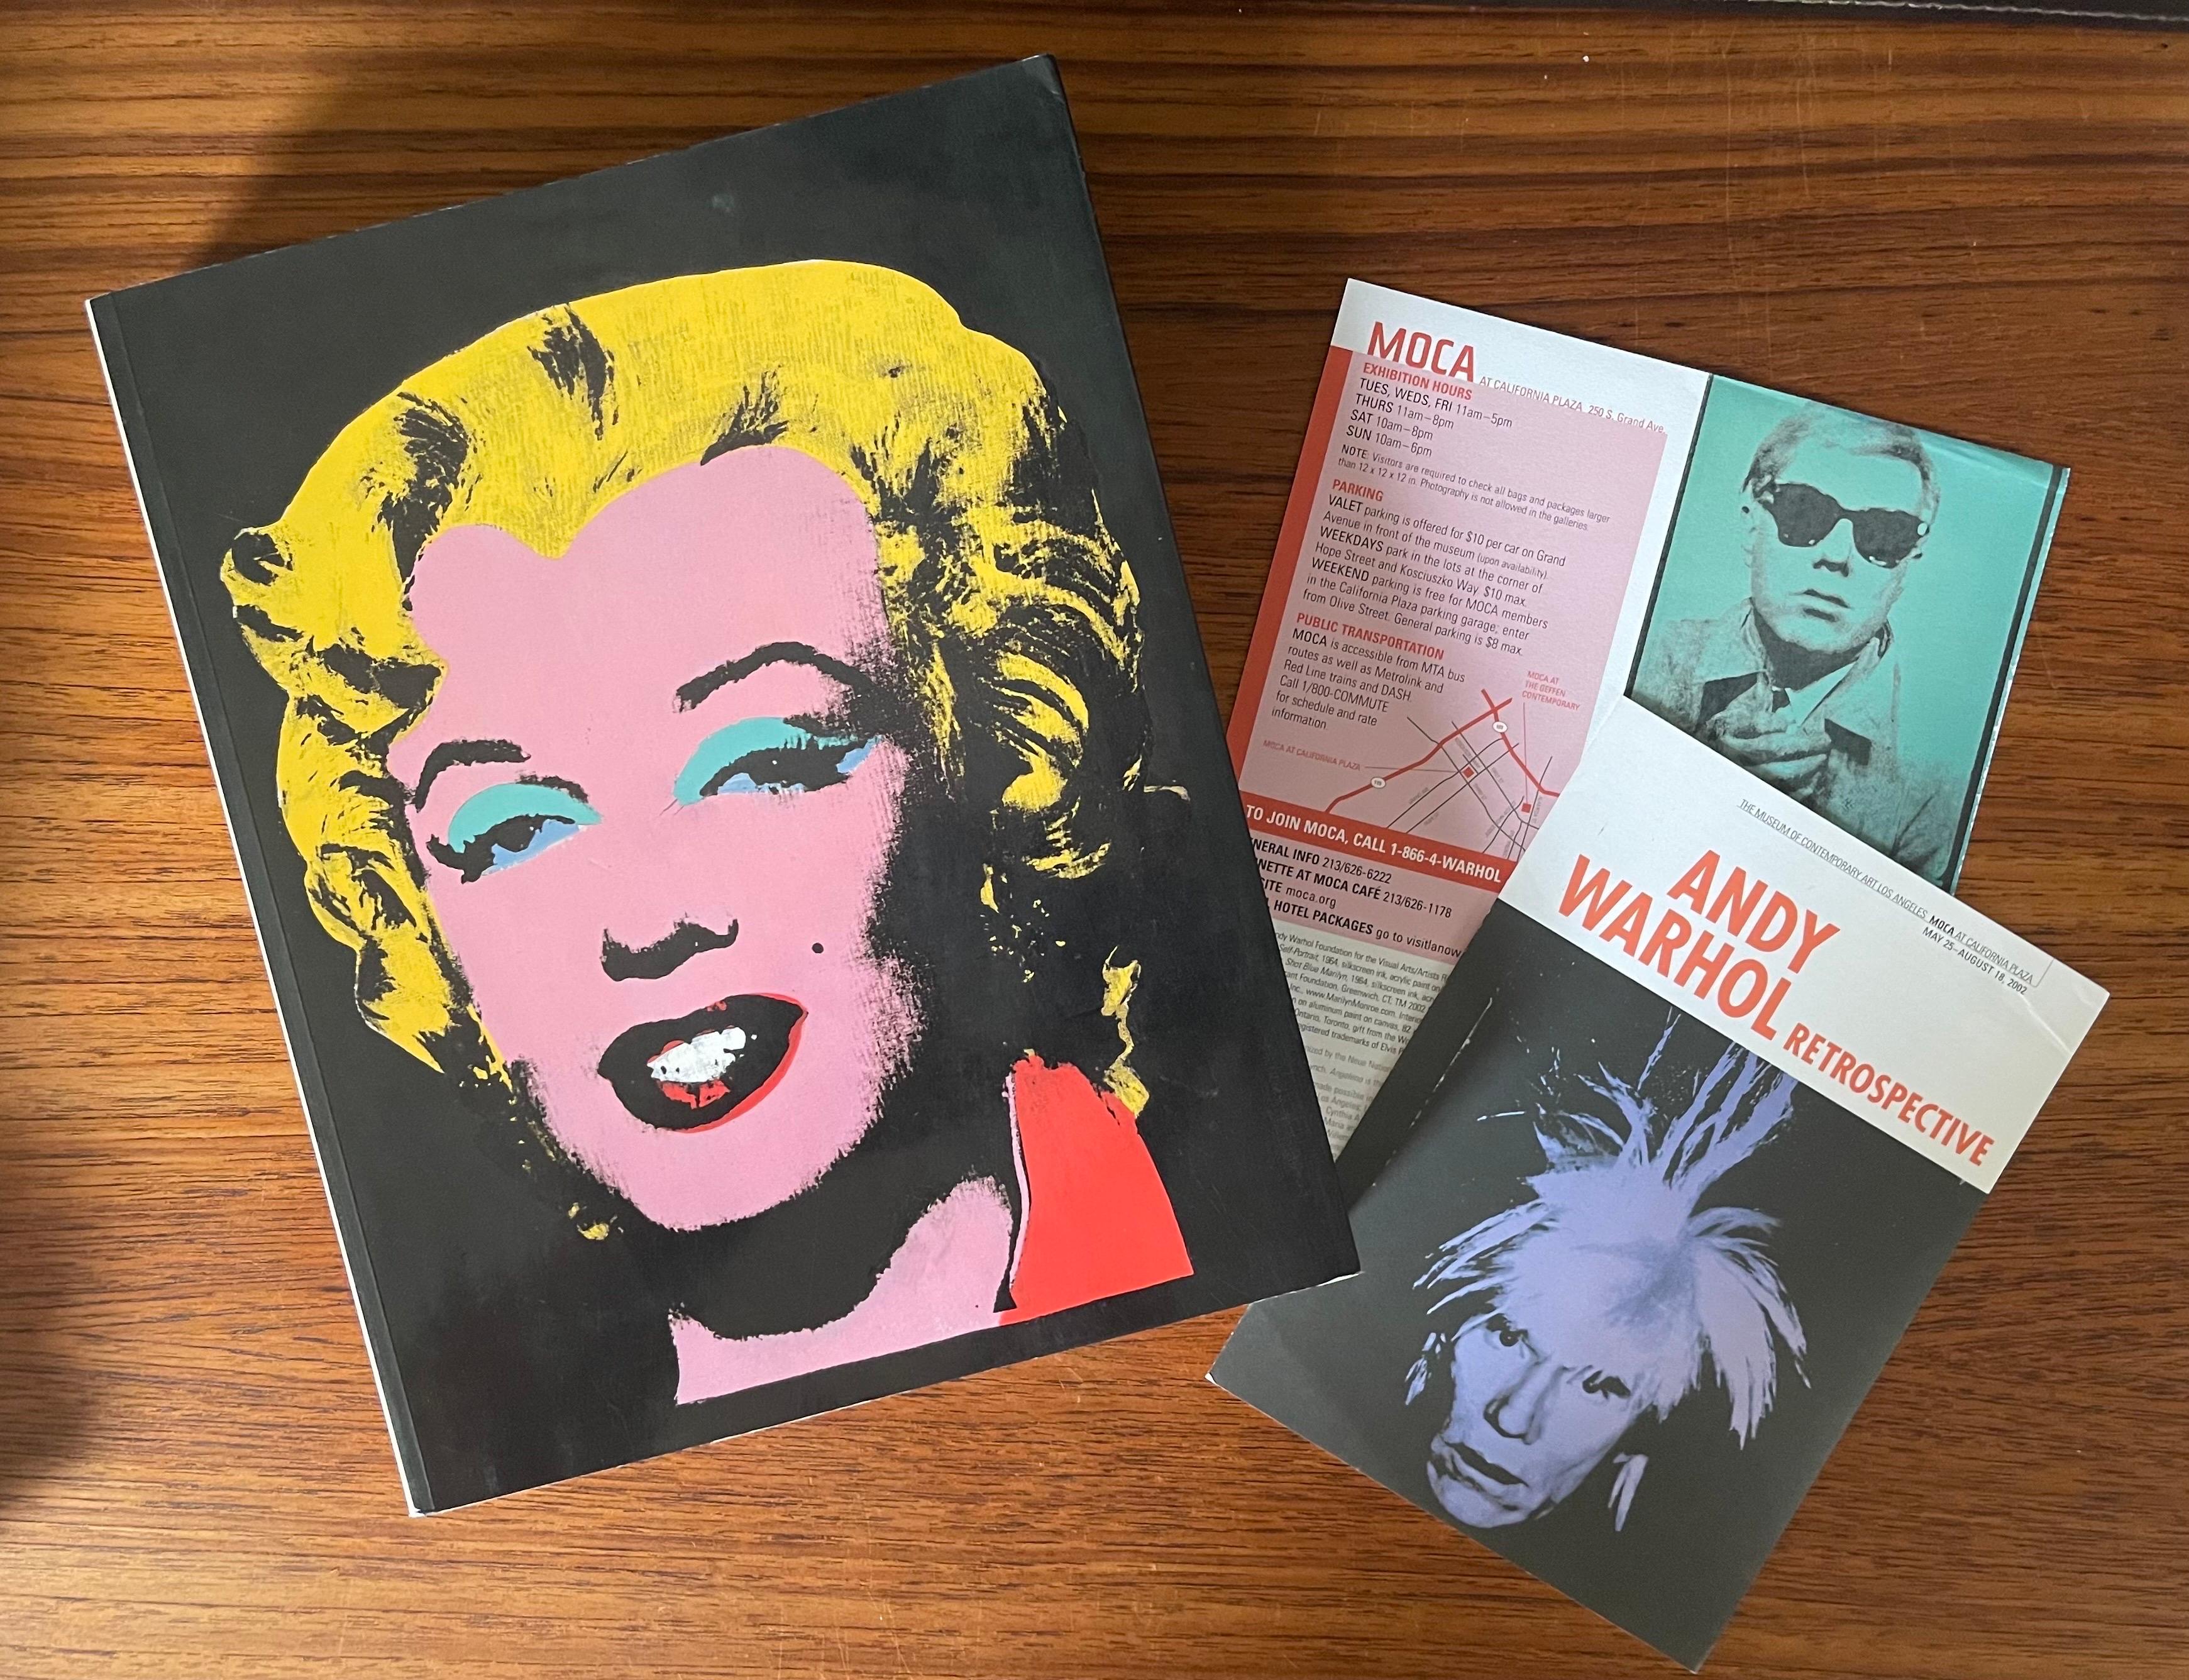 Warhol Retrospective Art Book and Exhibit Programs Moca LA 2002 For Sale 10